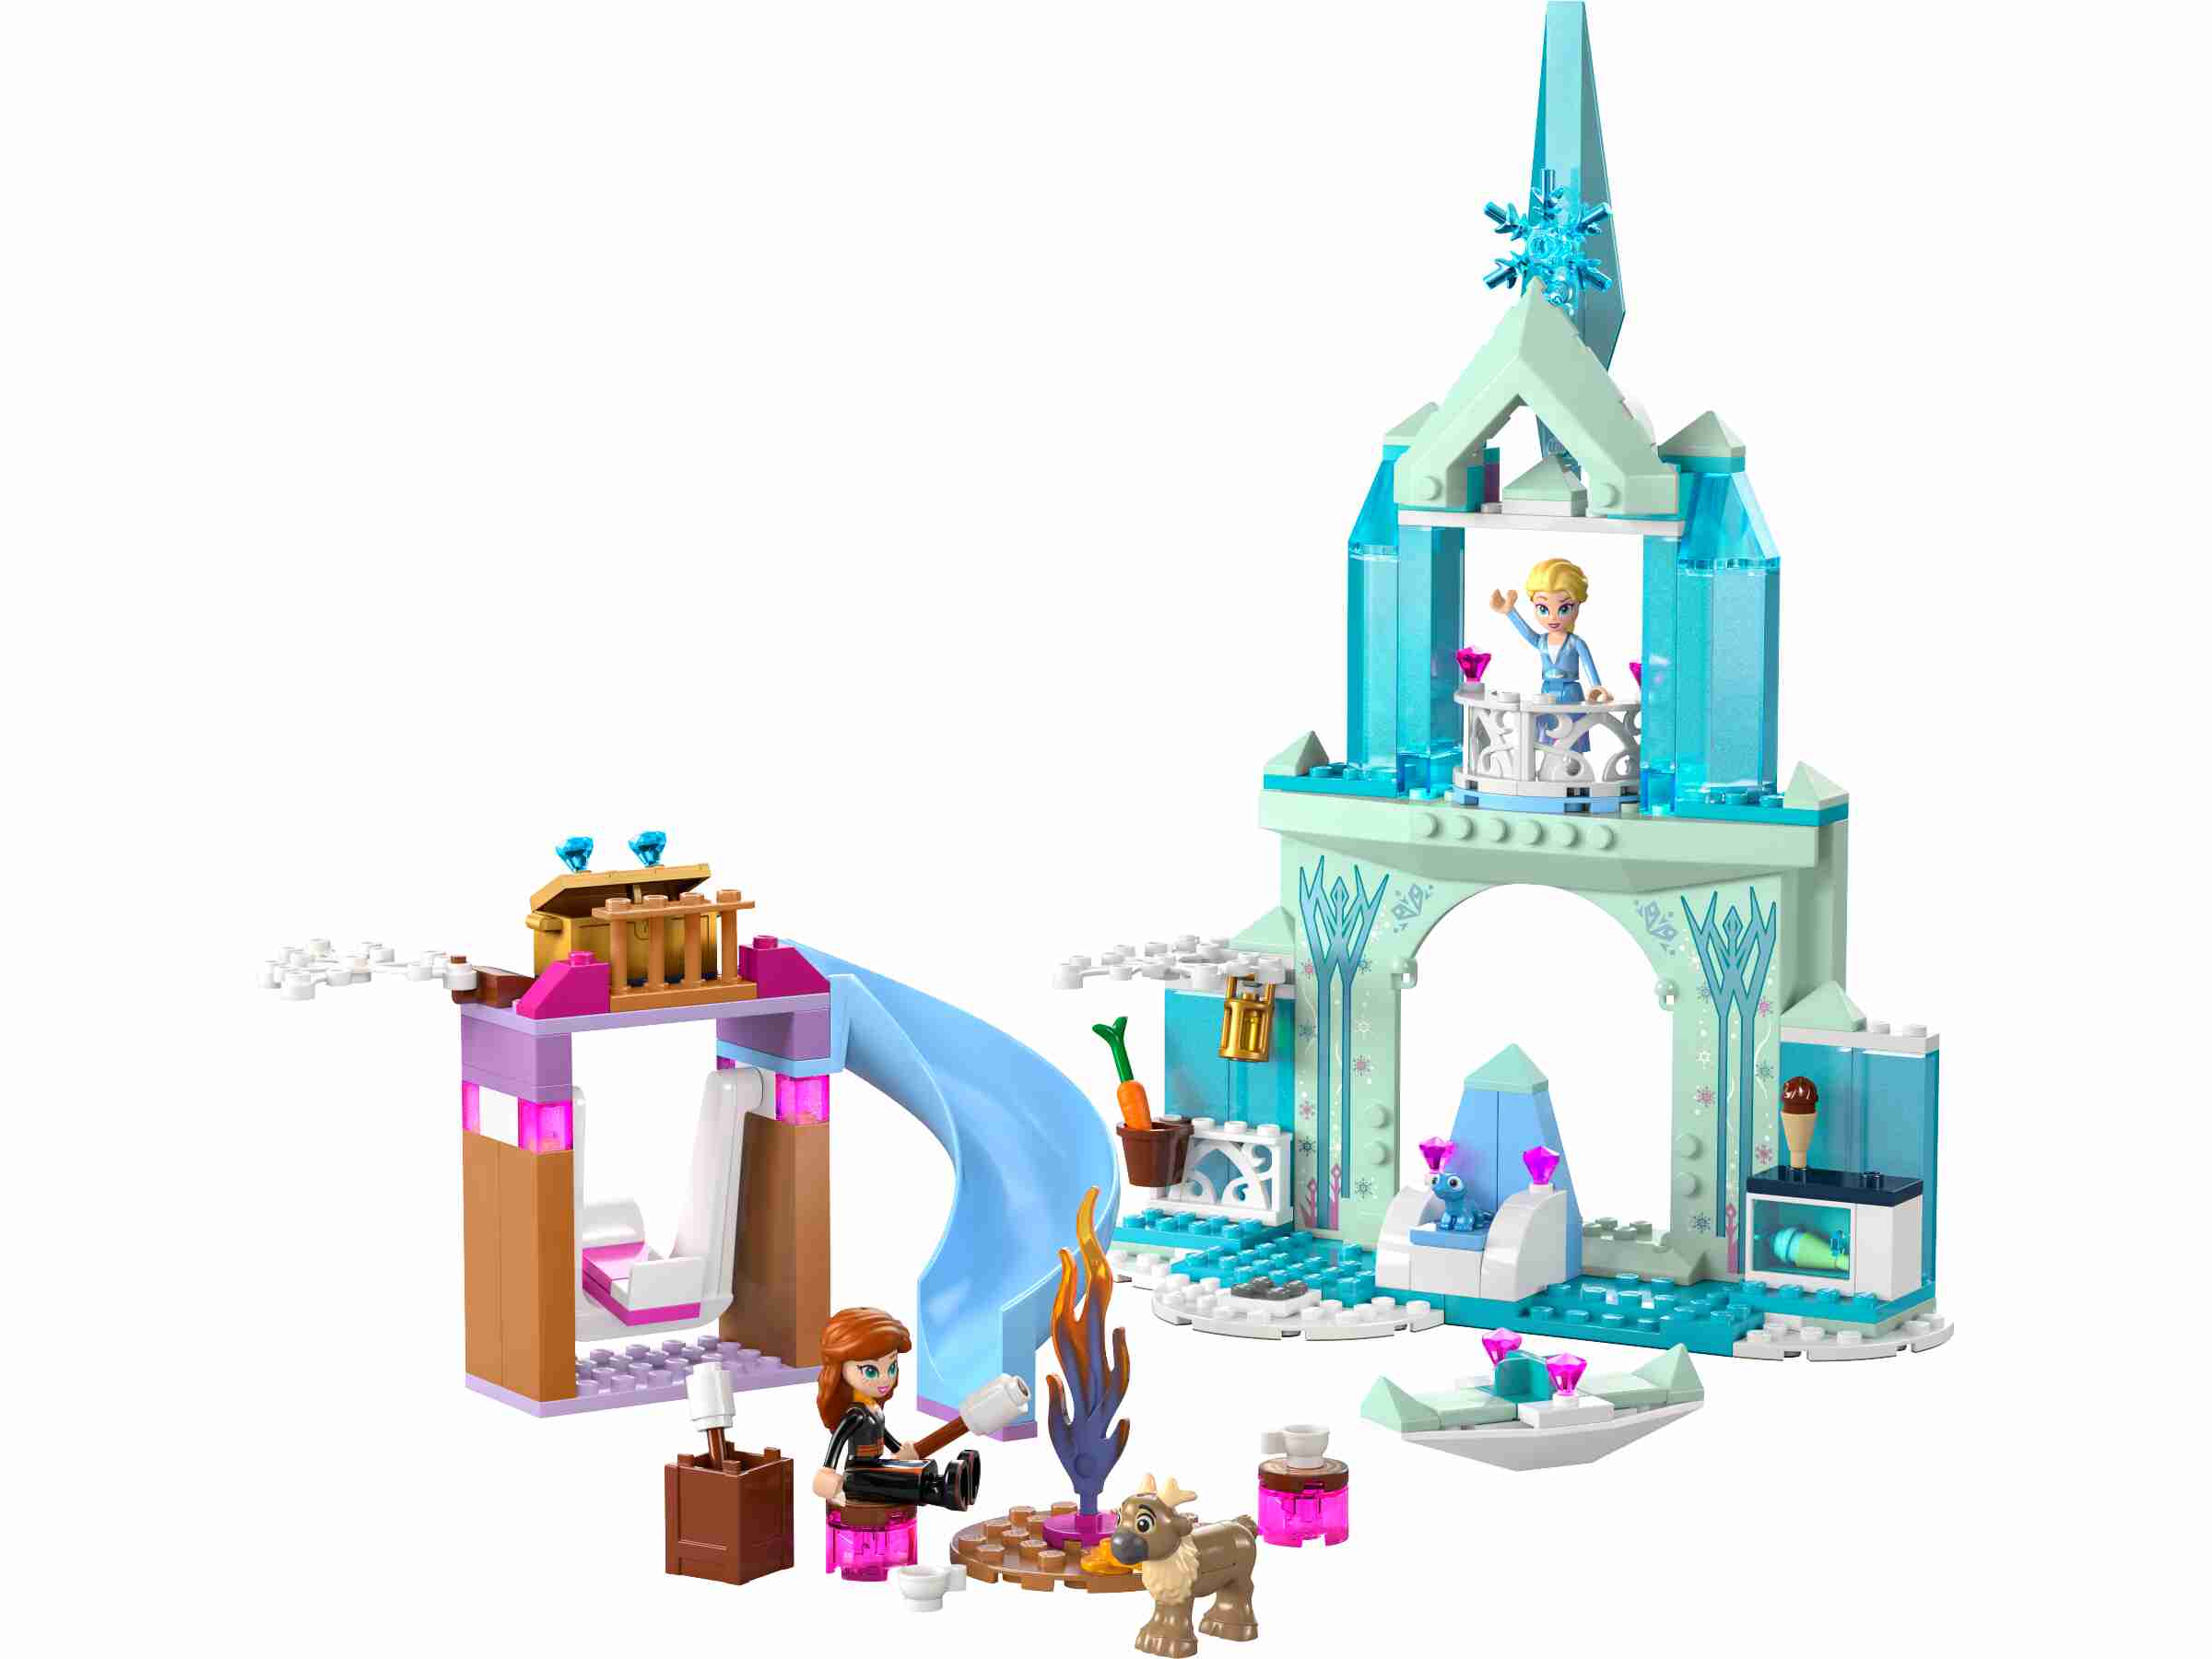 LEGO 43238 Disney Princess Elsas Eispalast, Elsa, Anna, Bruni und Baby-Rentier